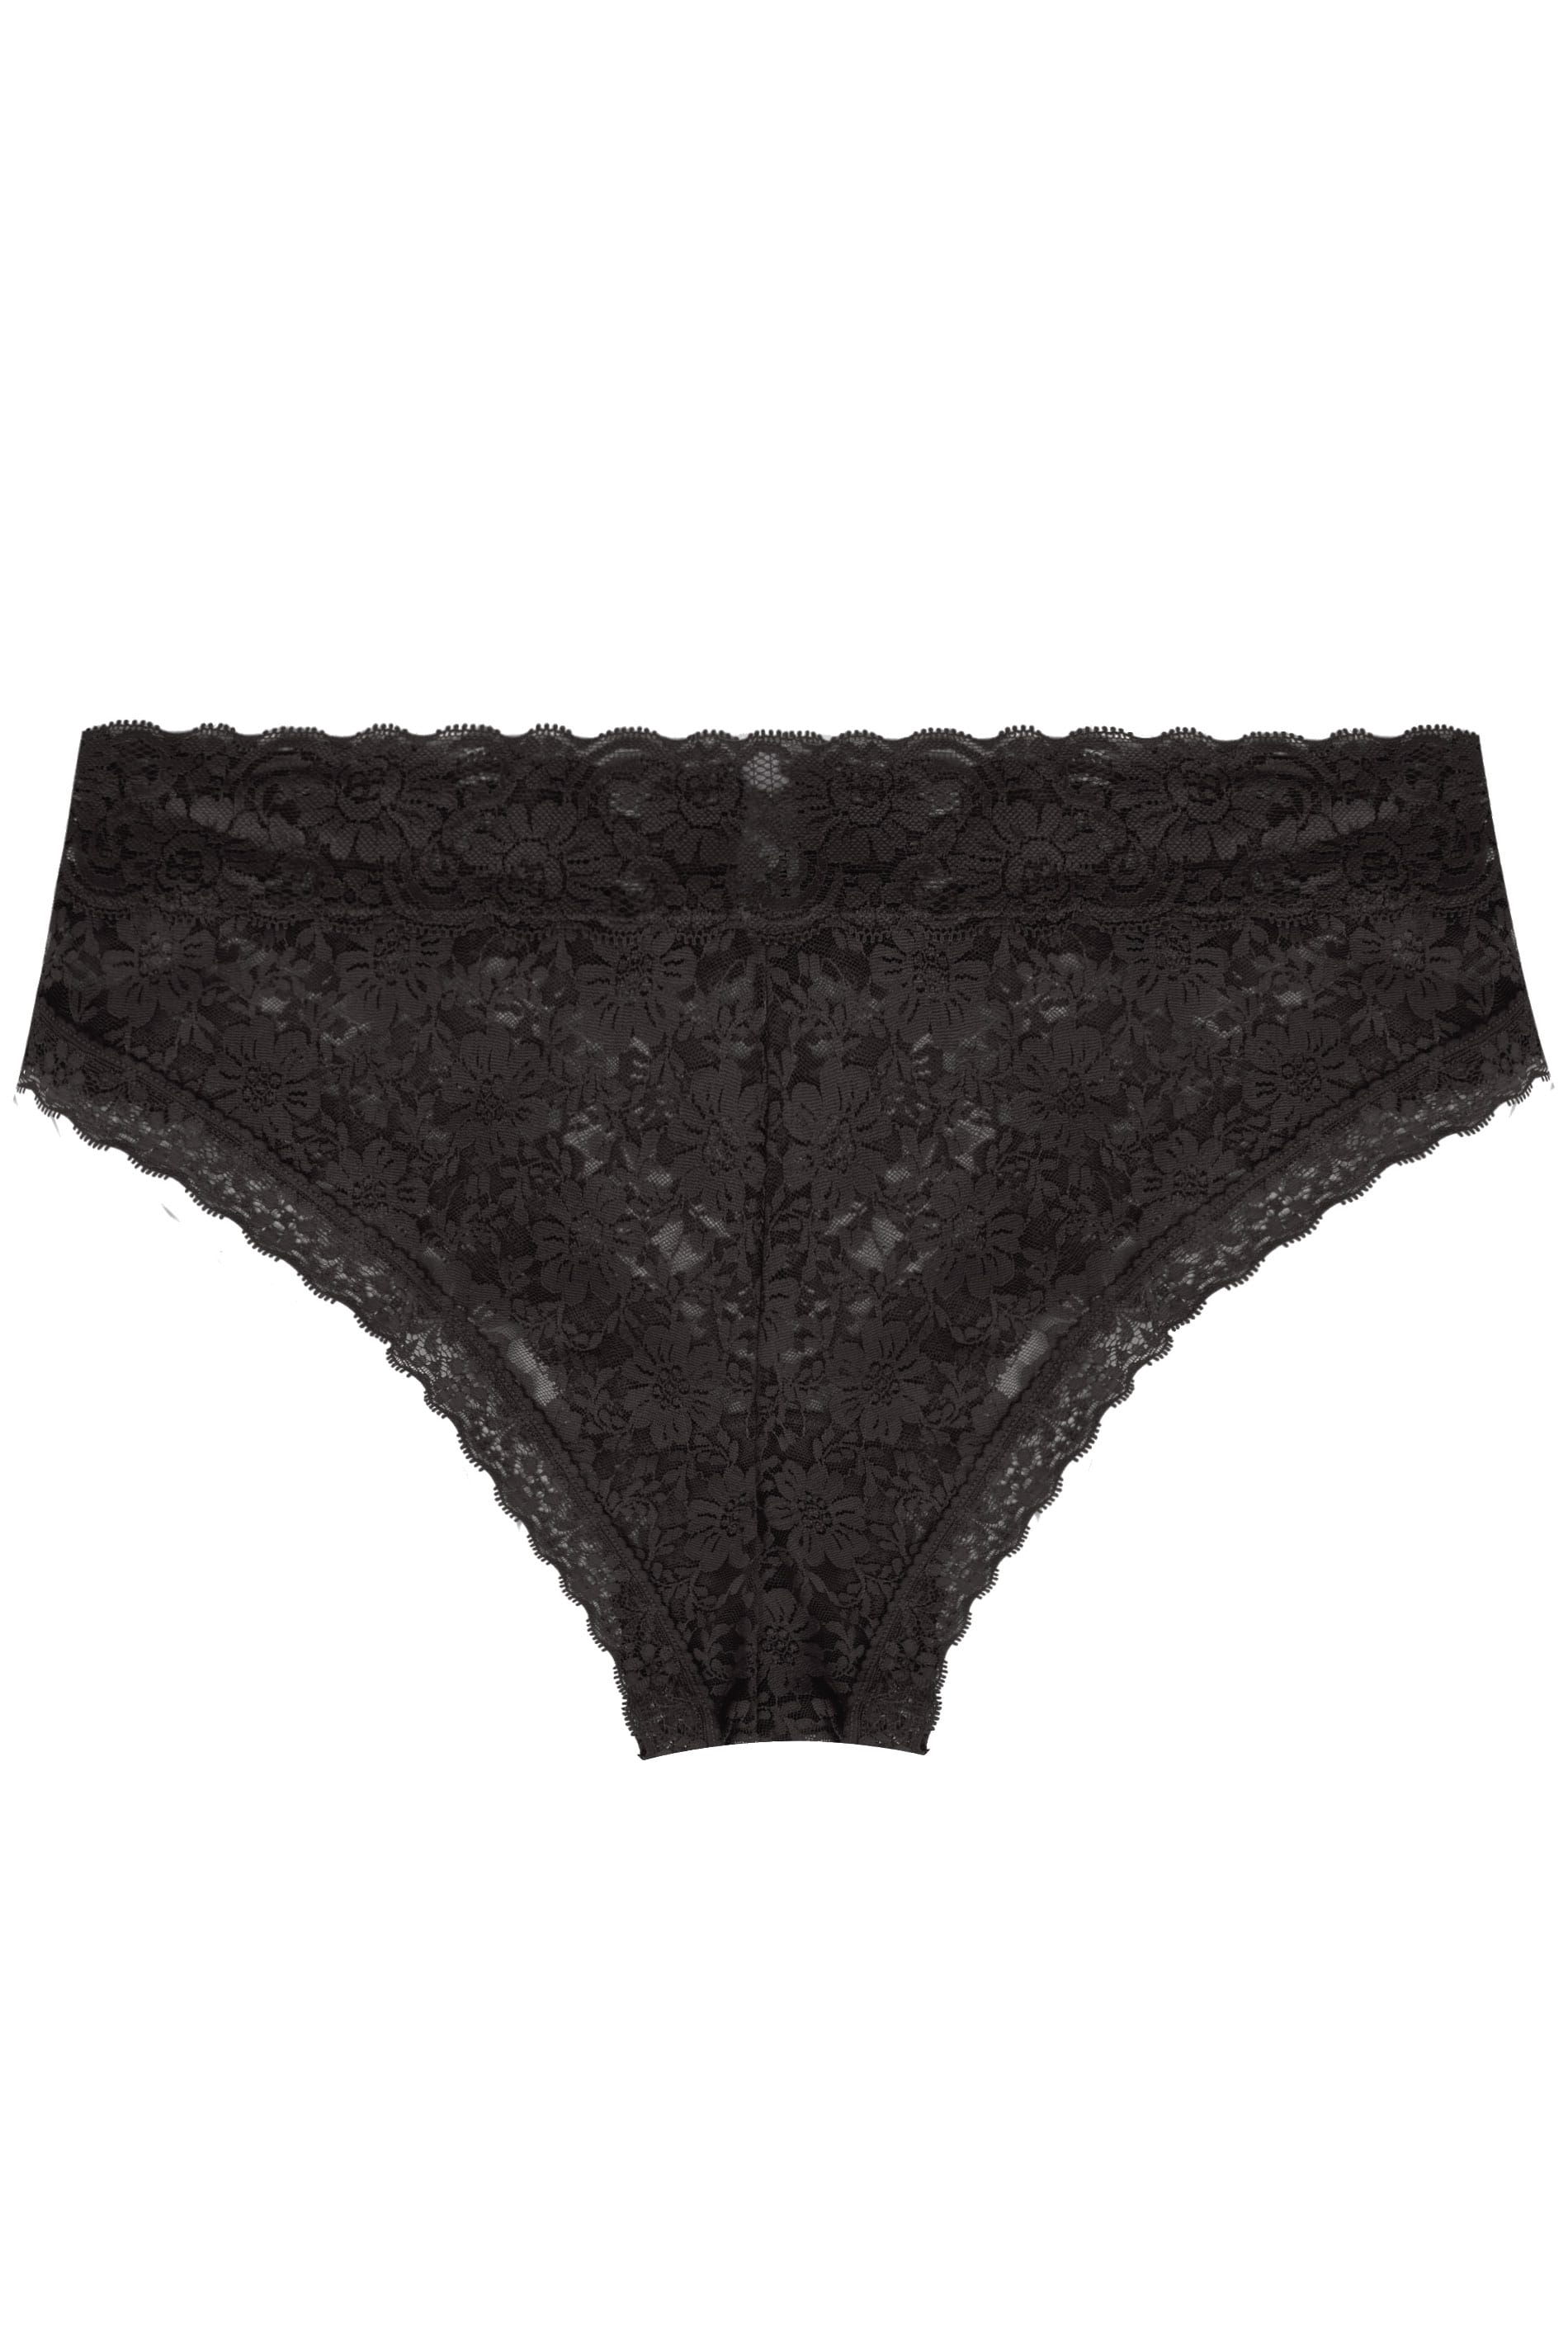 Brazilian Black Lace Knickers, Black Panties, Black Lace Underwear